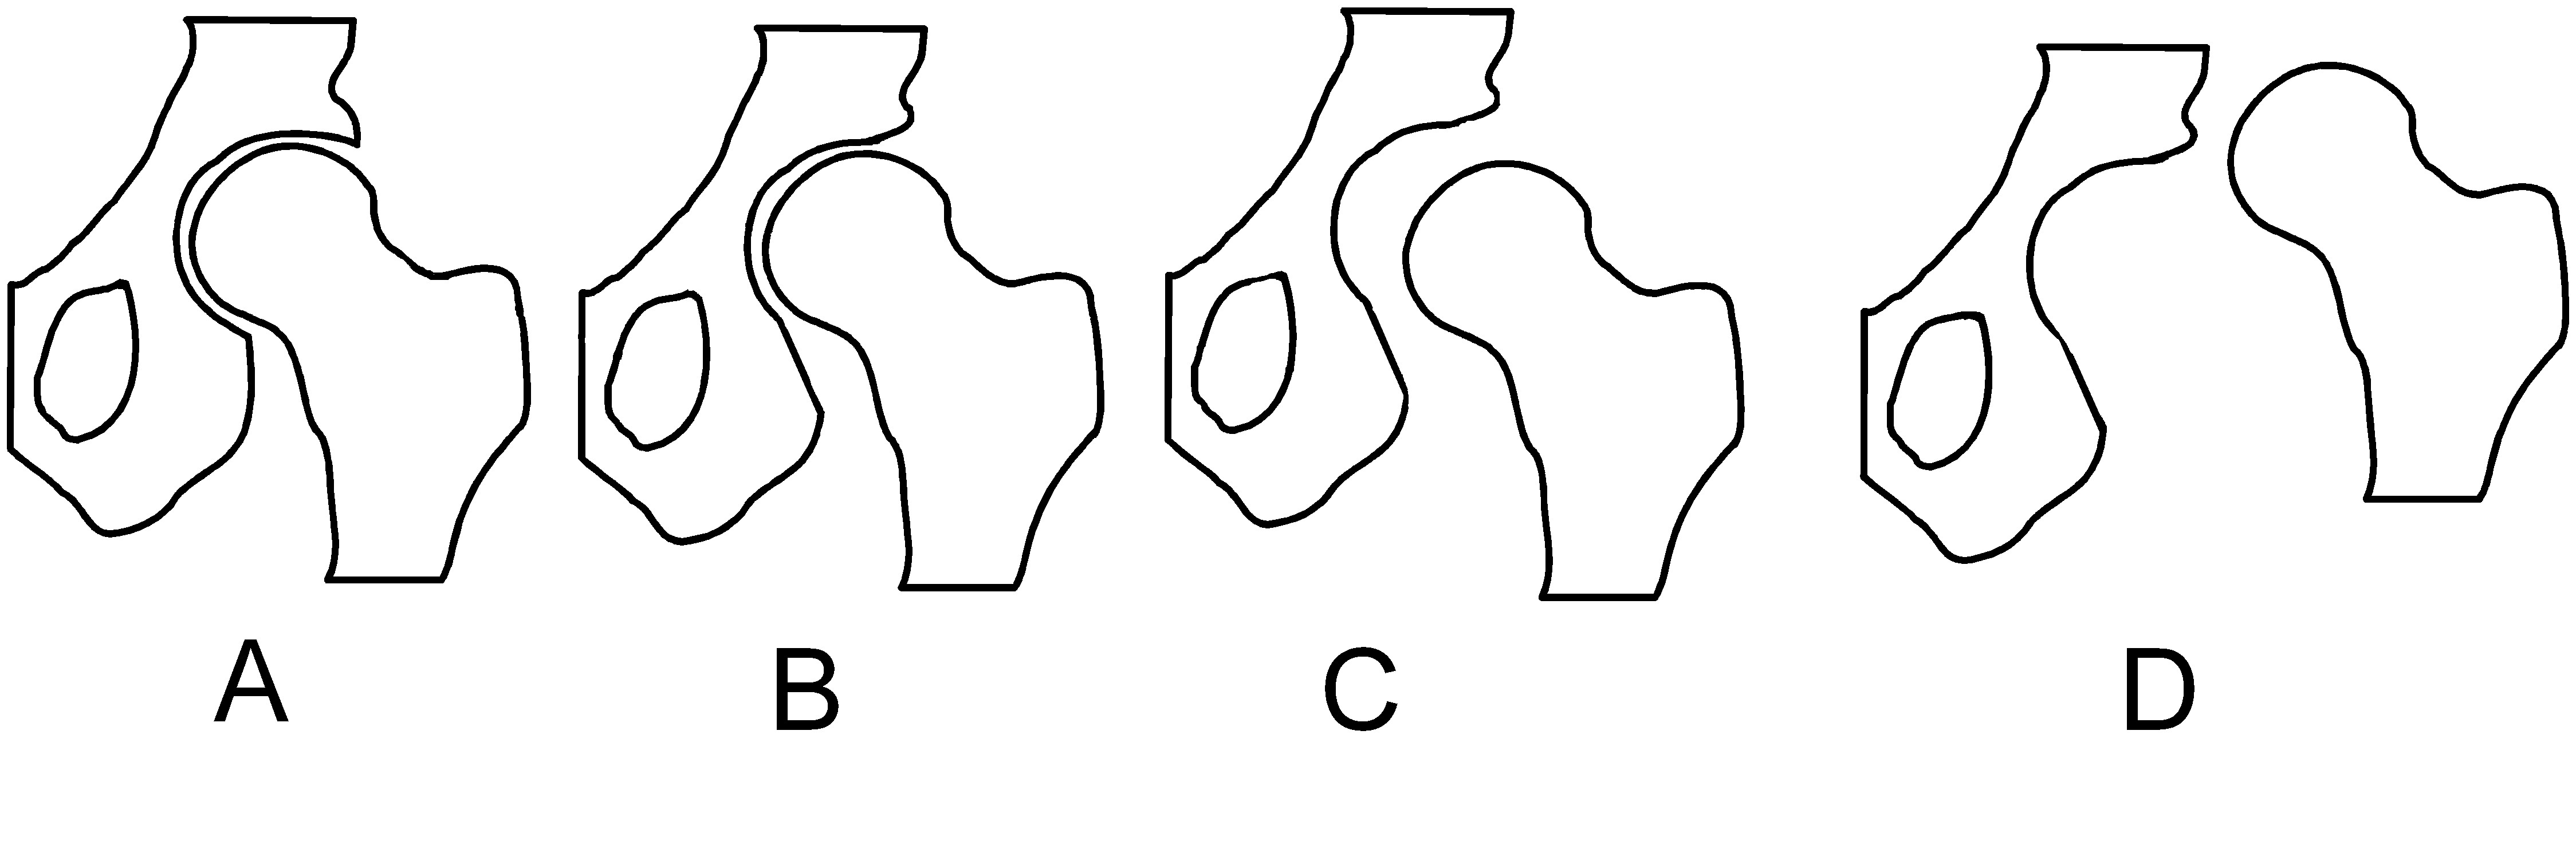 File:Hip dysplasia - schematic.jpg